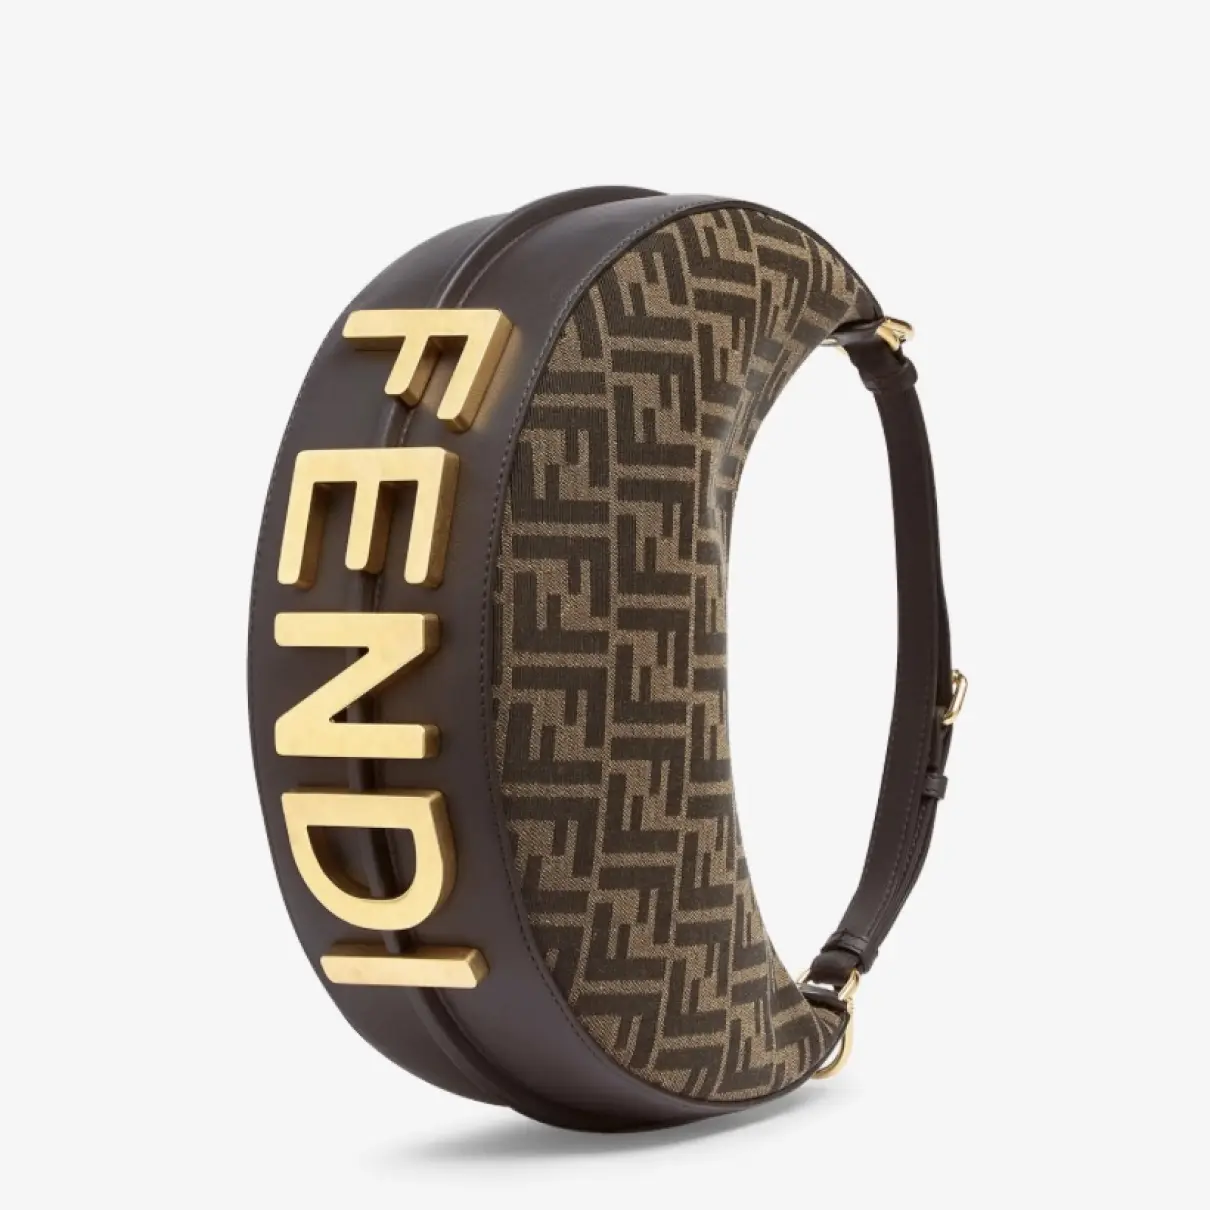 Buy Fendi Fendigraphy leather handbag online